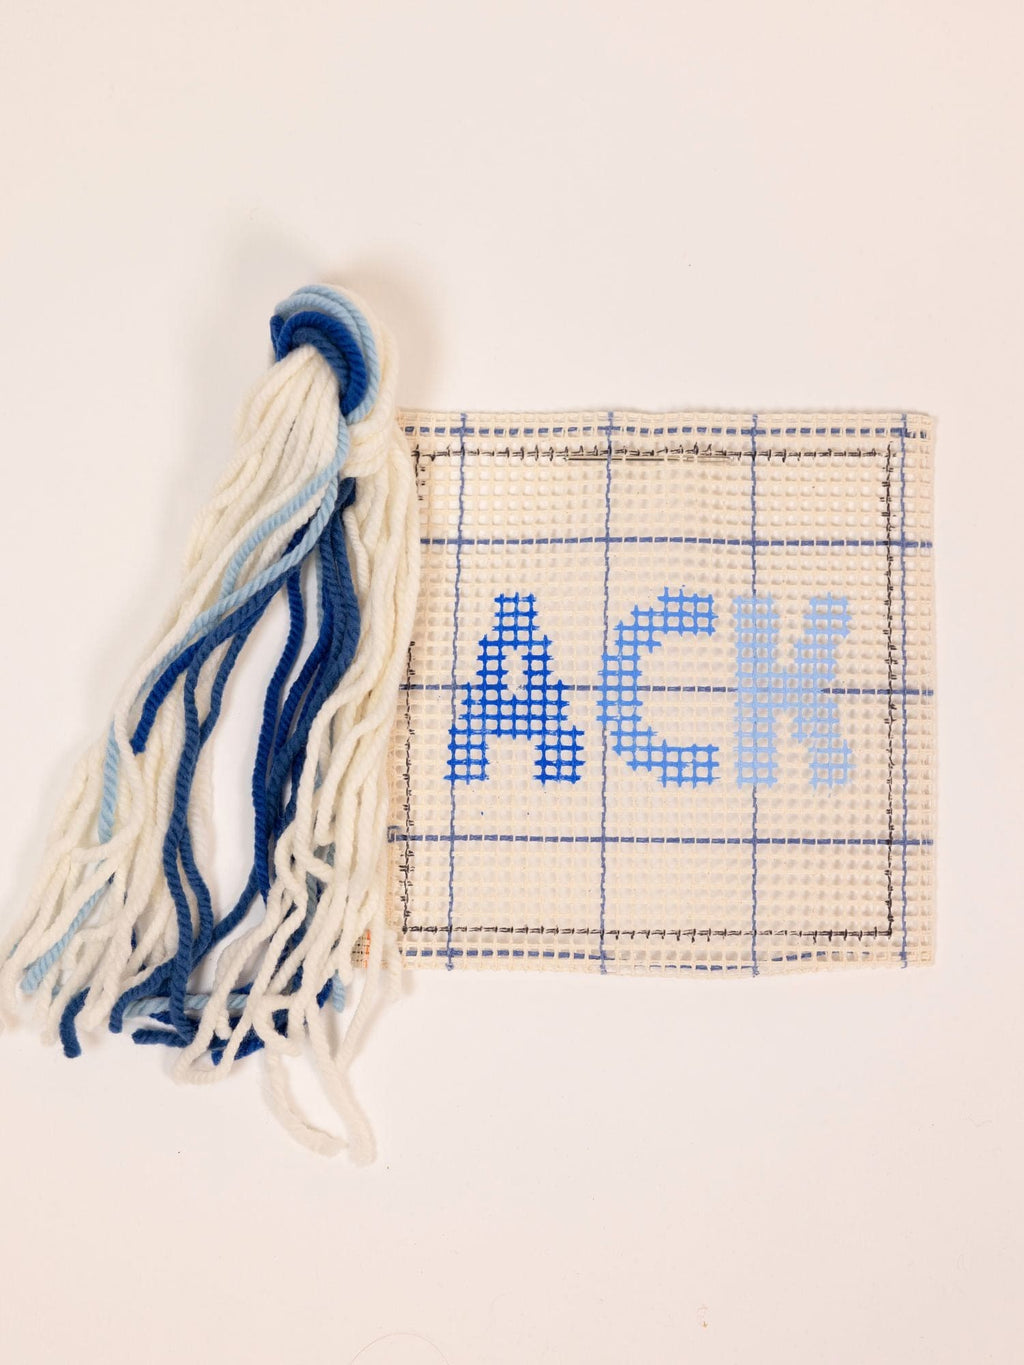 ACK Gradient Quick Kit